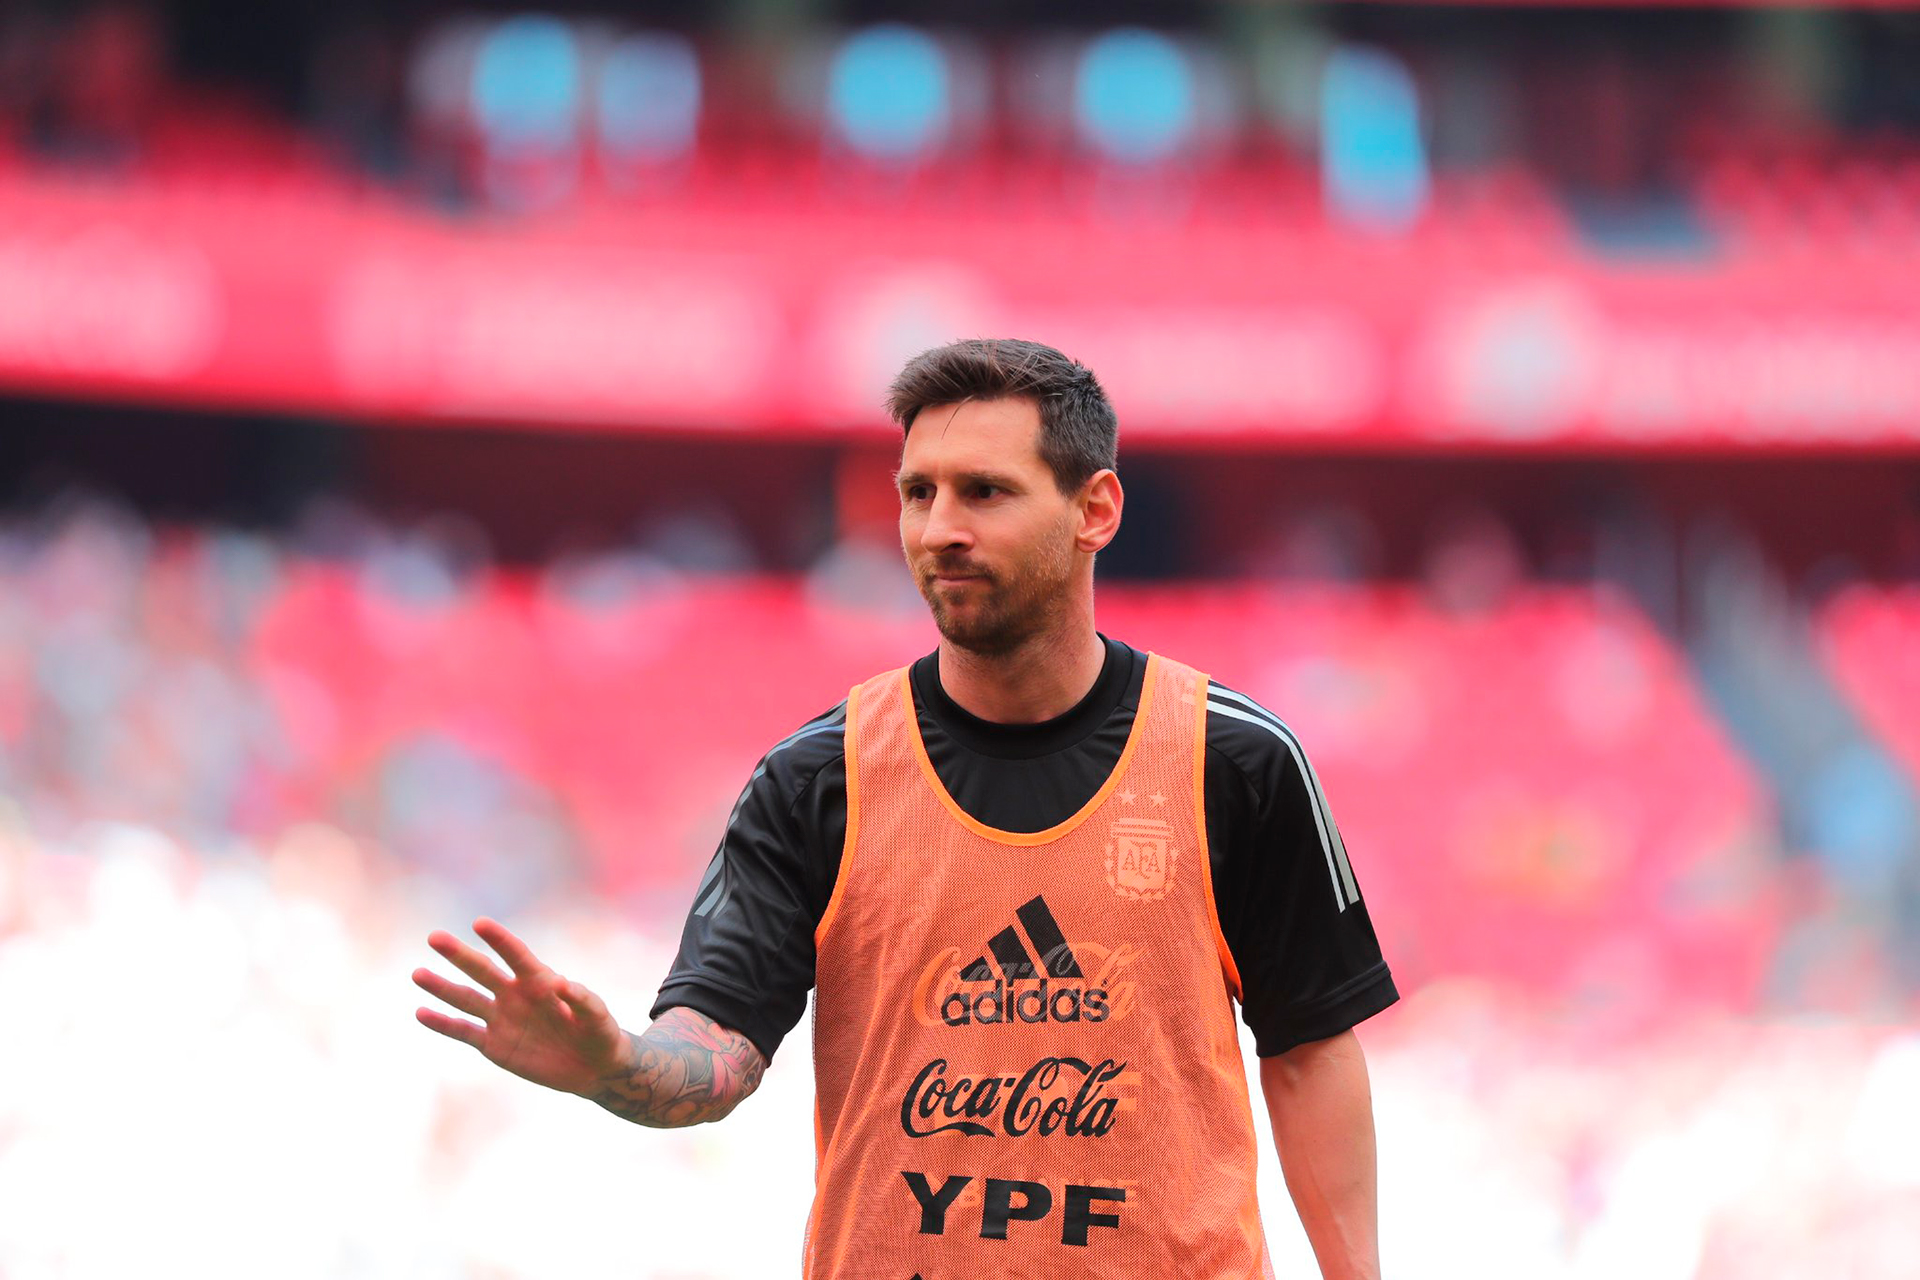 Show de definiciones y locura por Messi: miles de personas vibraron con la práctica abierta de la selección argentina en San Mamés